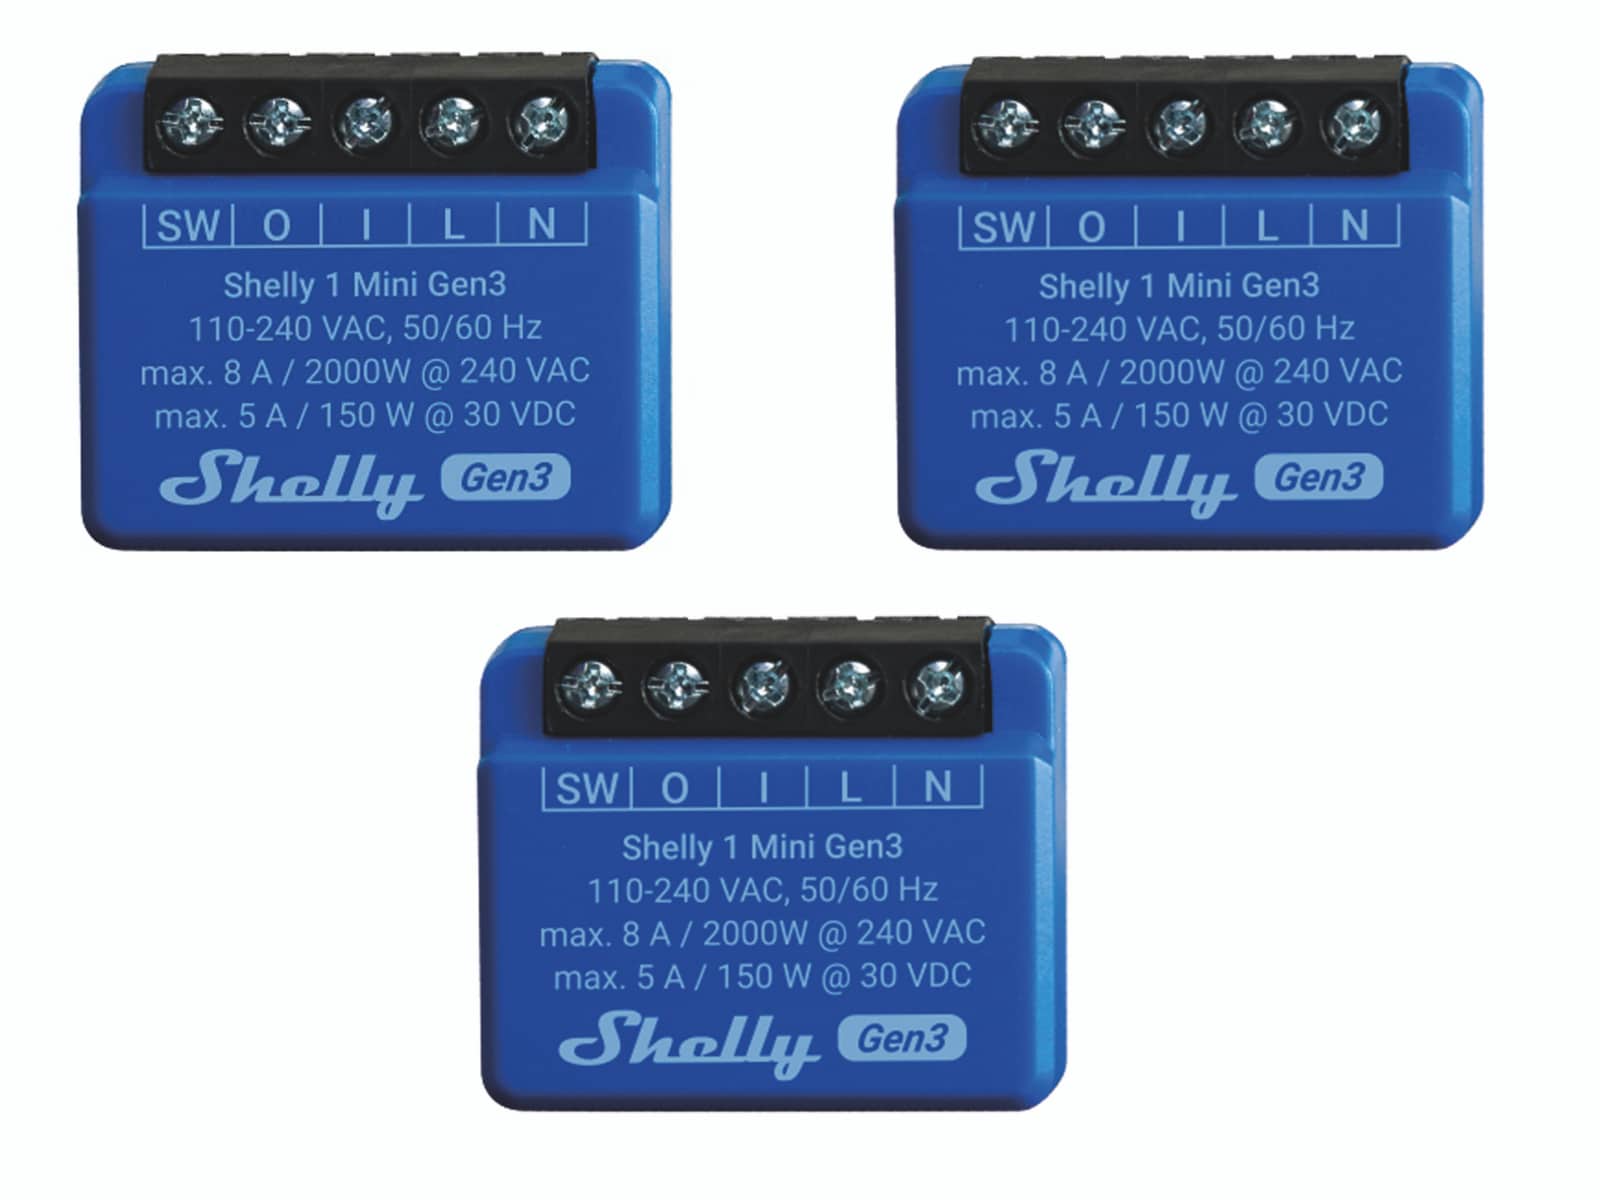 SHELLY WLAN-Schaltaktor 1 Mini Gen 3, blau, 3 Stück online kaufen